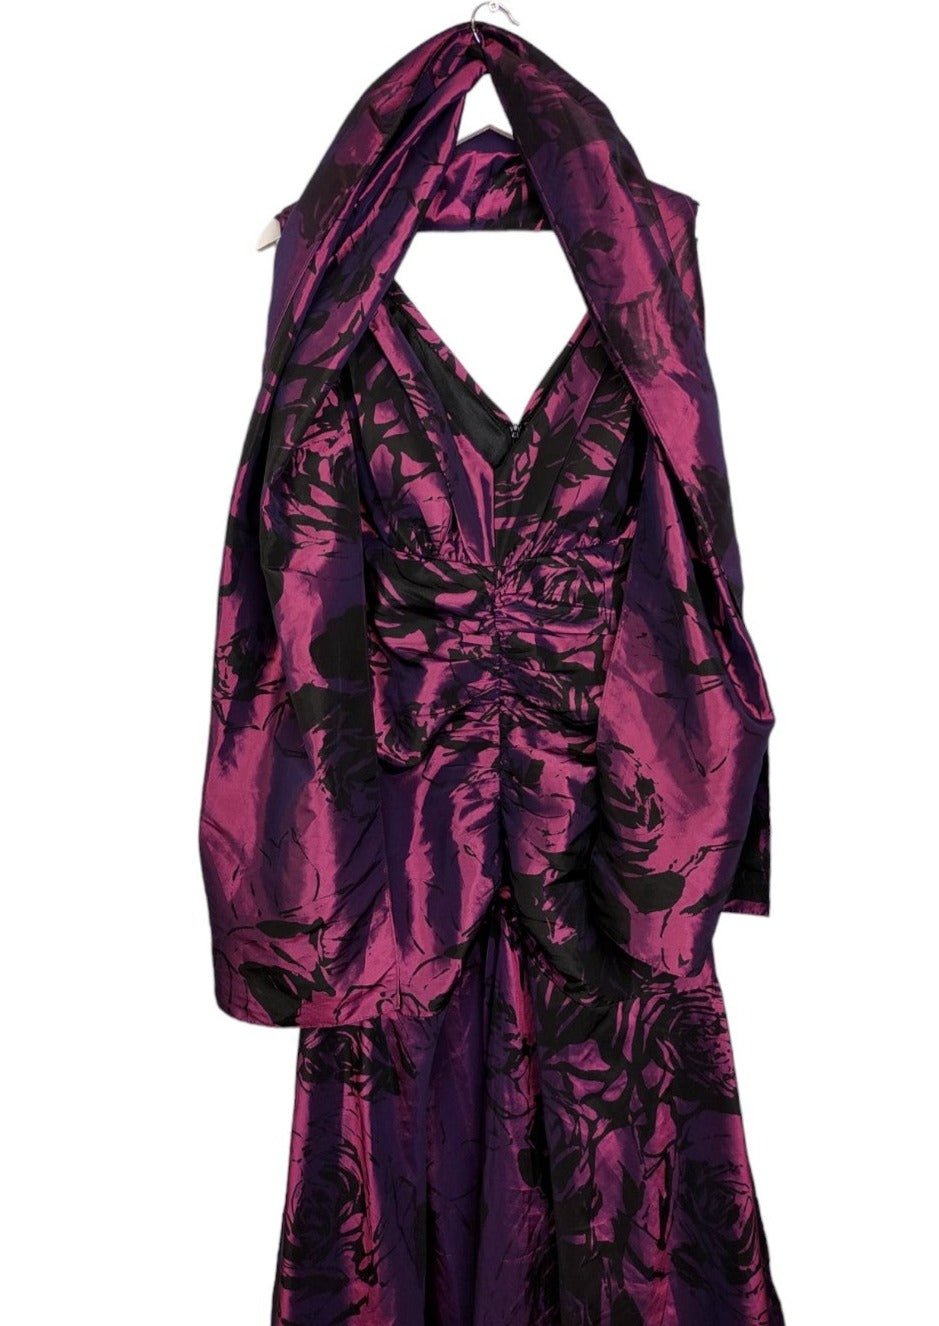 Vintage, Maxi, Σατέν Βραδινό Φόρεμα MEDICI σε Μωβ-Μαύρο χρώμα με Ασορτί Πασμίνα (Large)